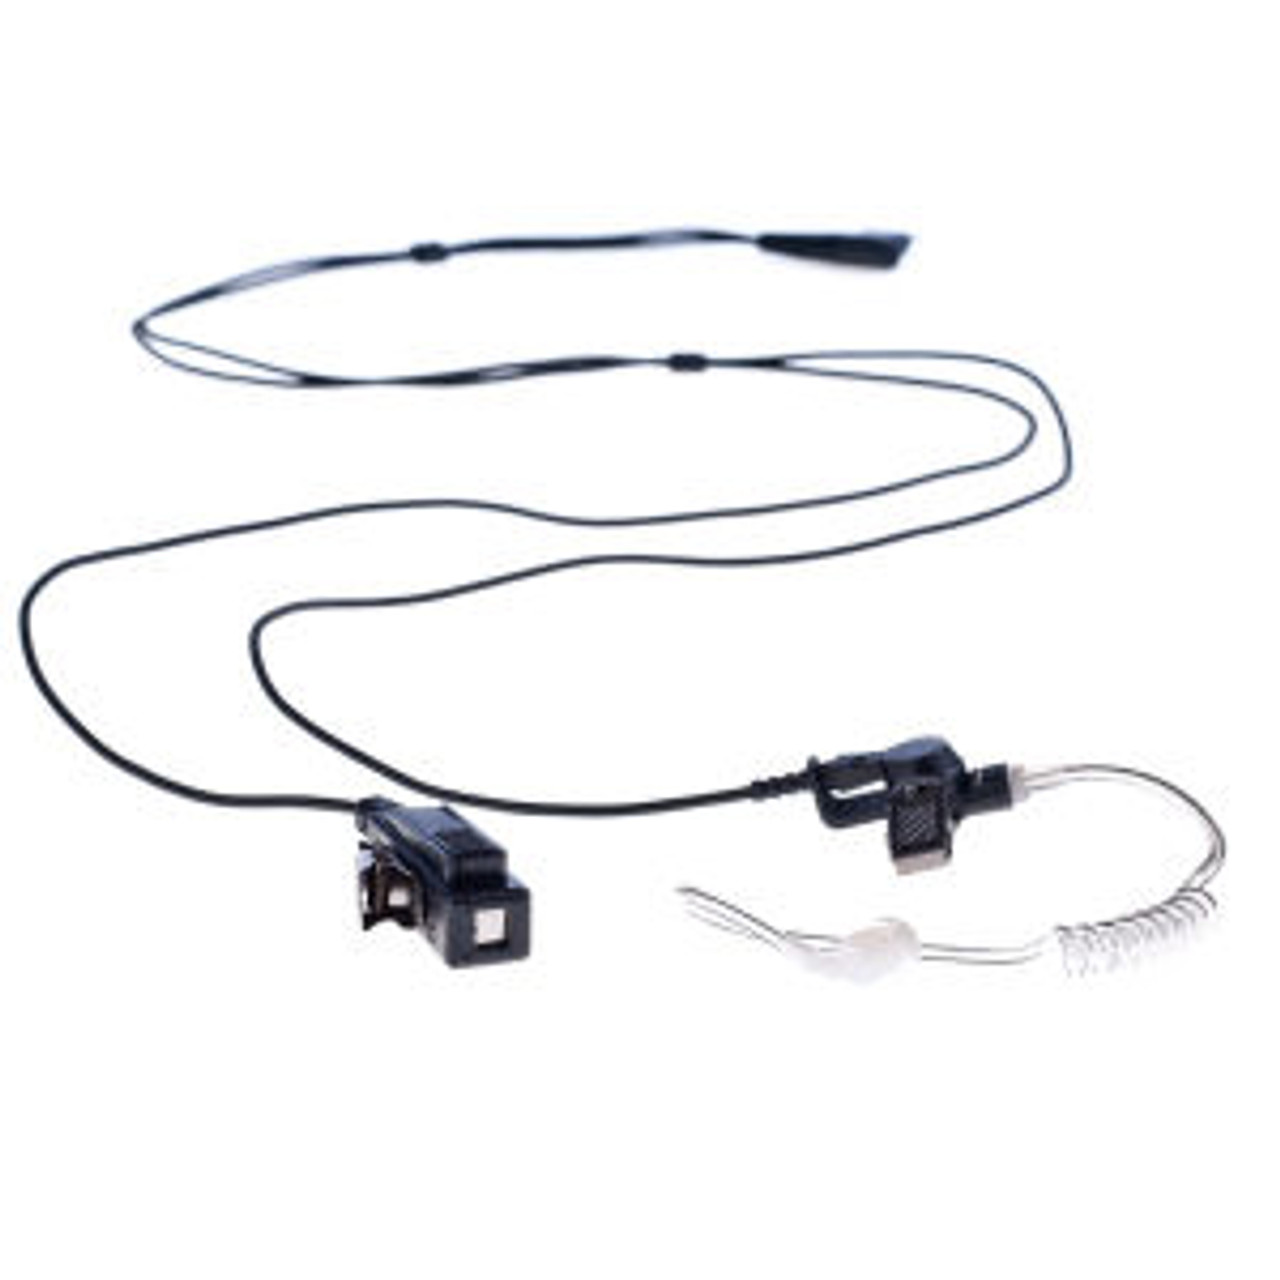 Harris P7130 2-Wire Surveillance Kit